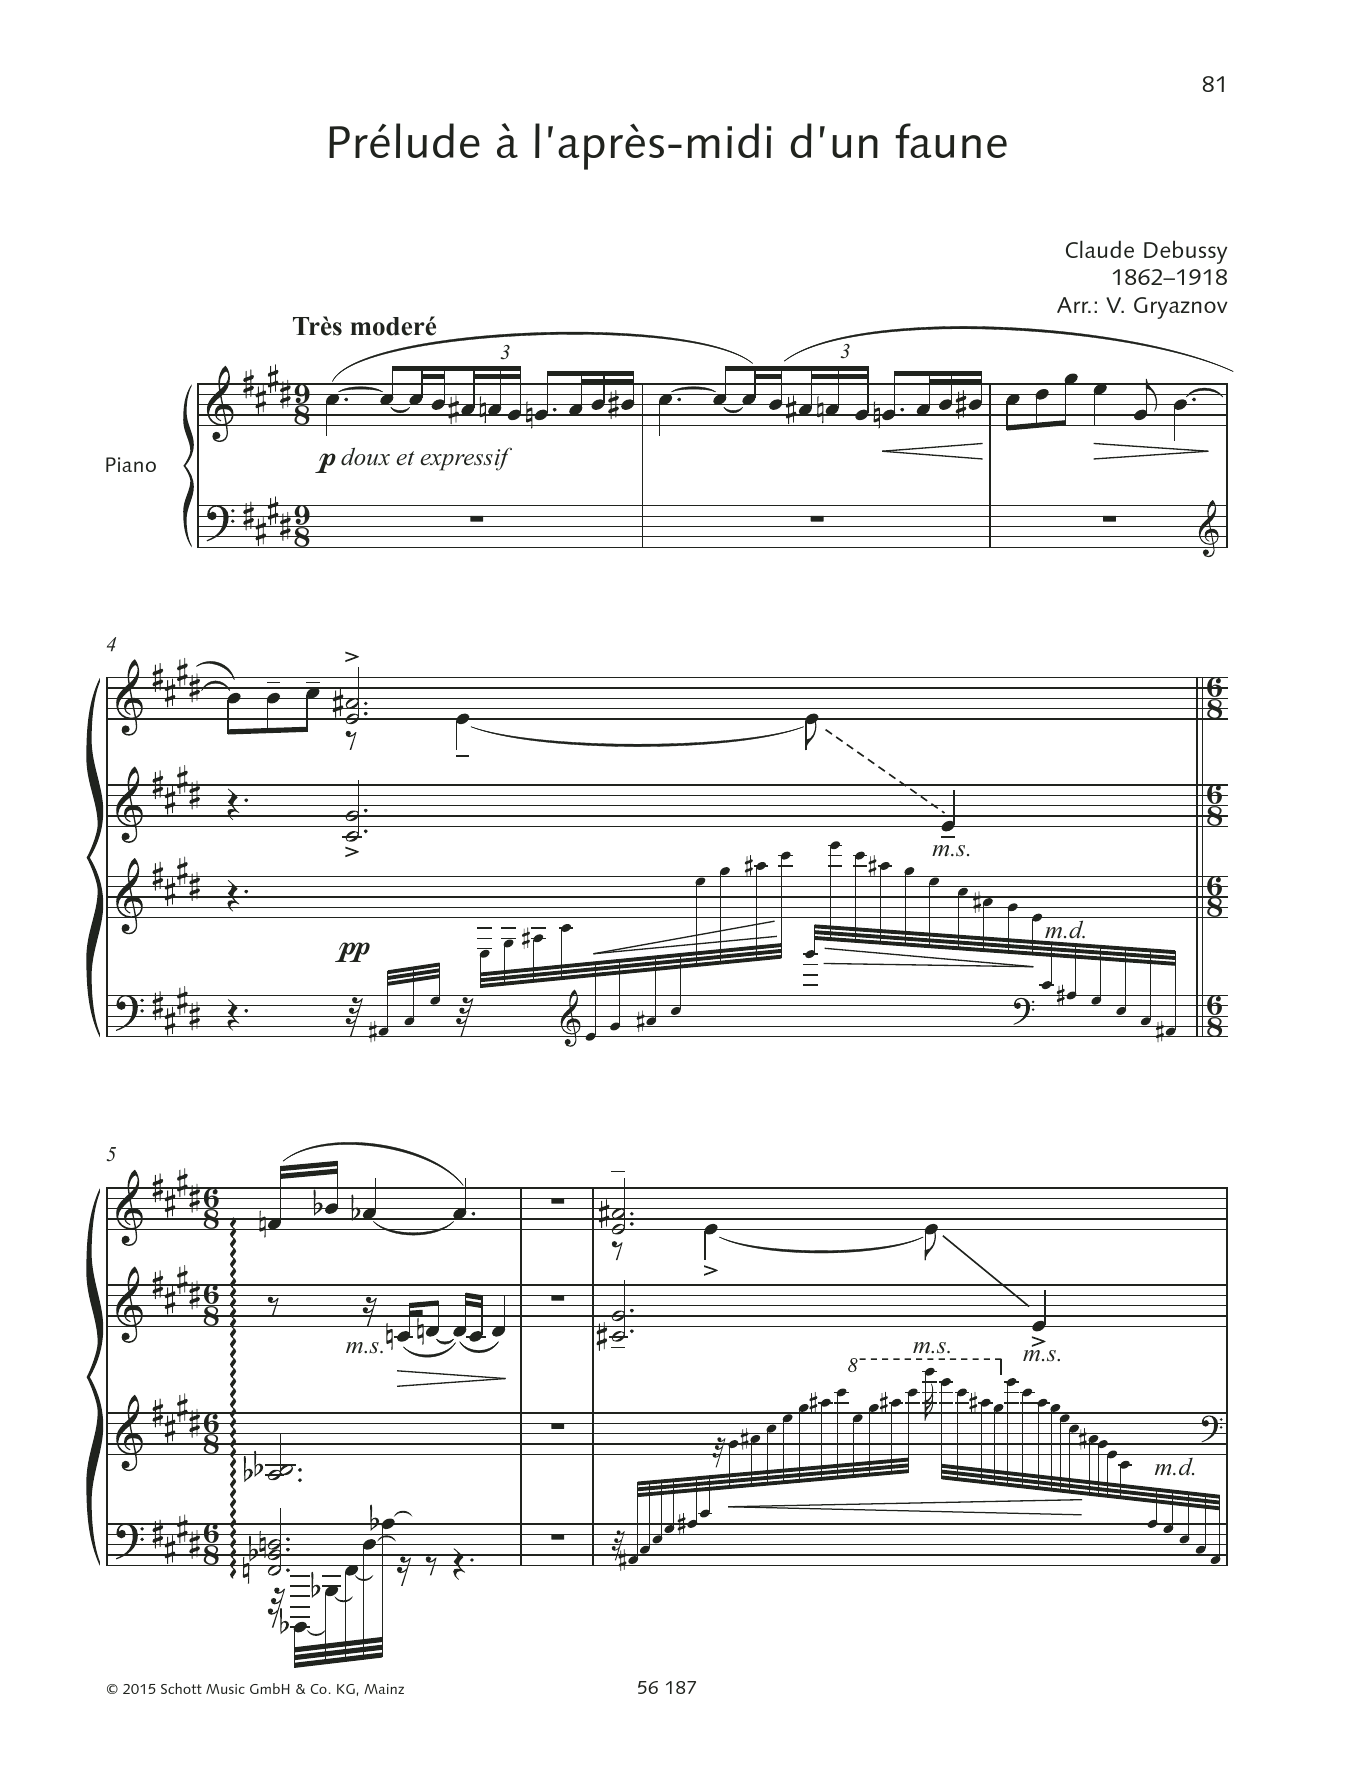 Claude Debussy Prélude à l'après-midi d'un faune Sheet Music Notes & Chords for Piano Solo - Download or Print PDF